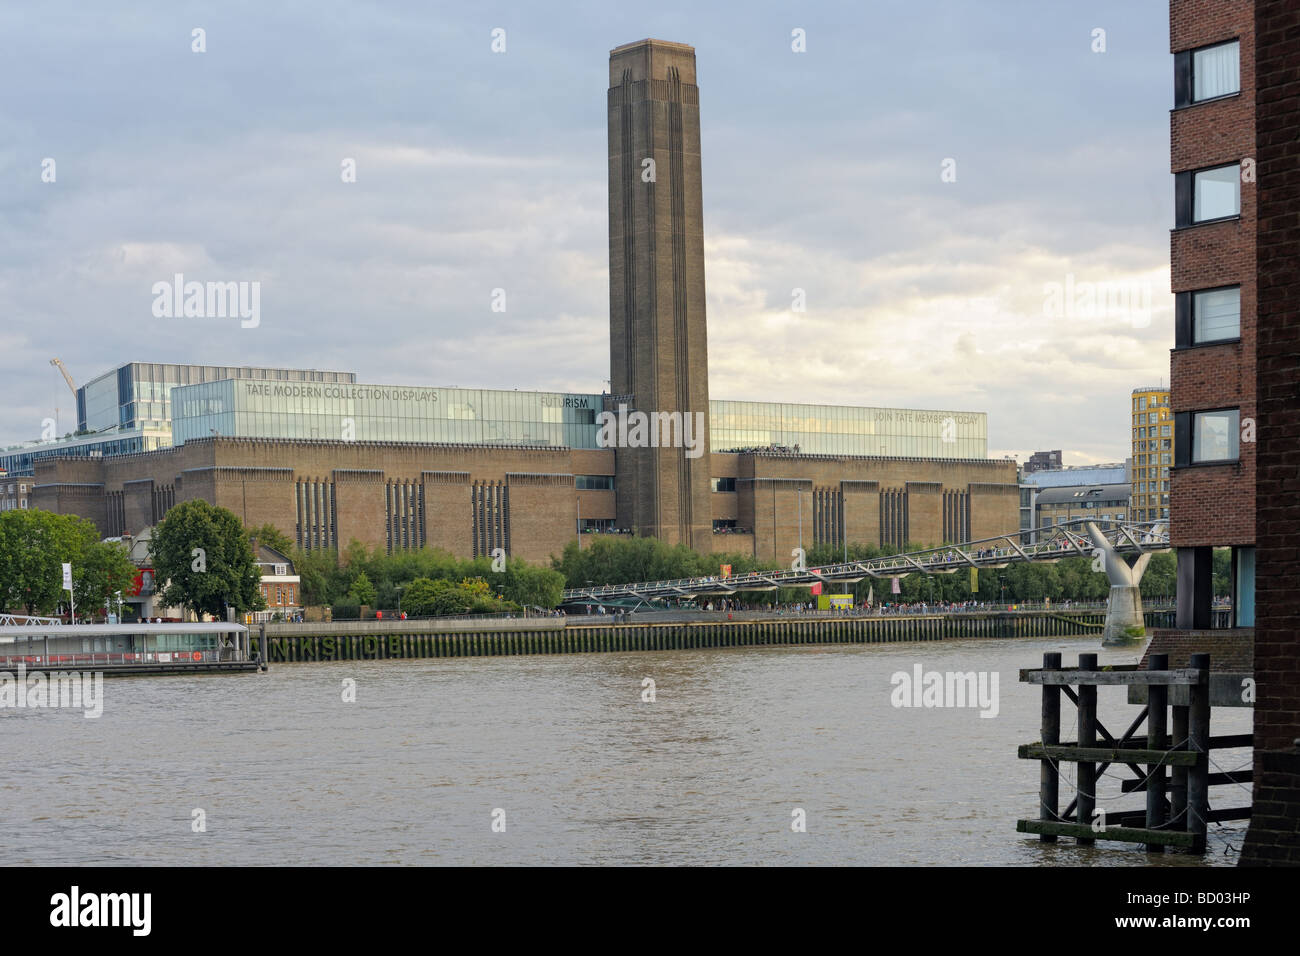 Tate Modern, musée national d'art moderne, l'ancienne centrale électrique de Bankside, Londres, Angleterre, Royaume-Uni, Europe Banque D'Images